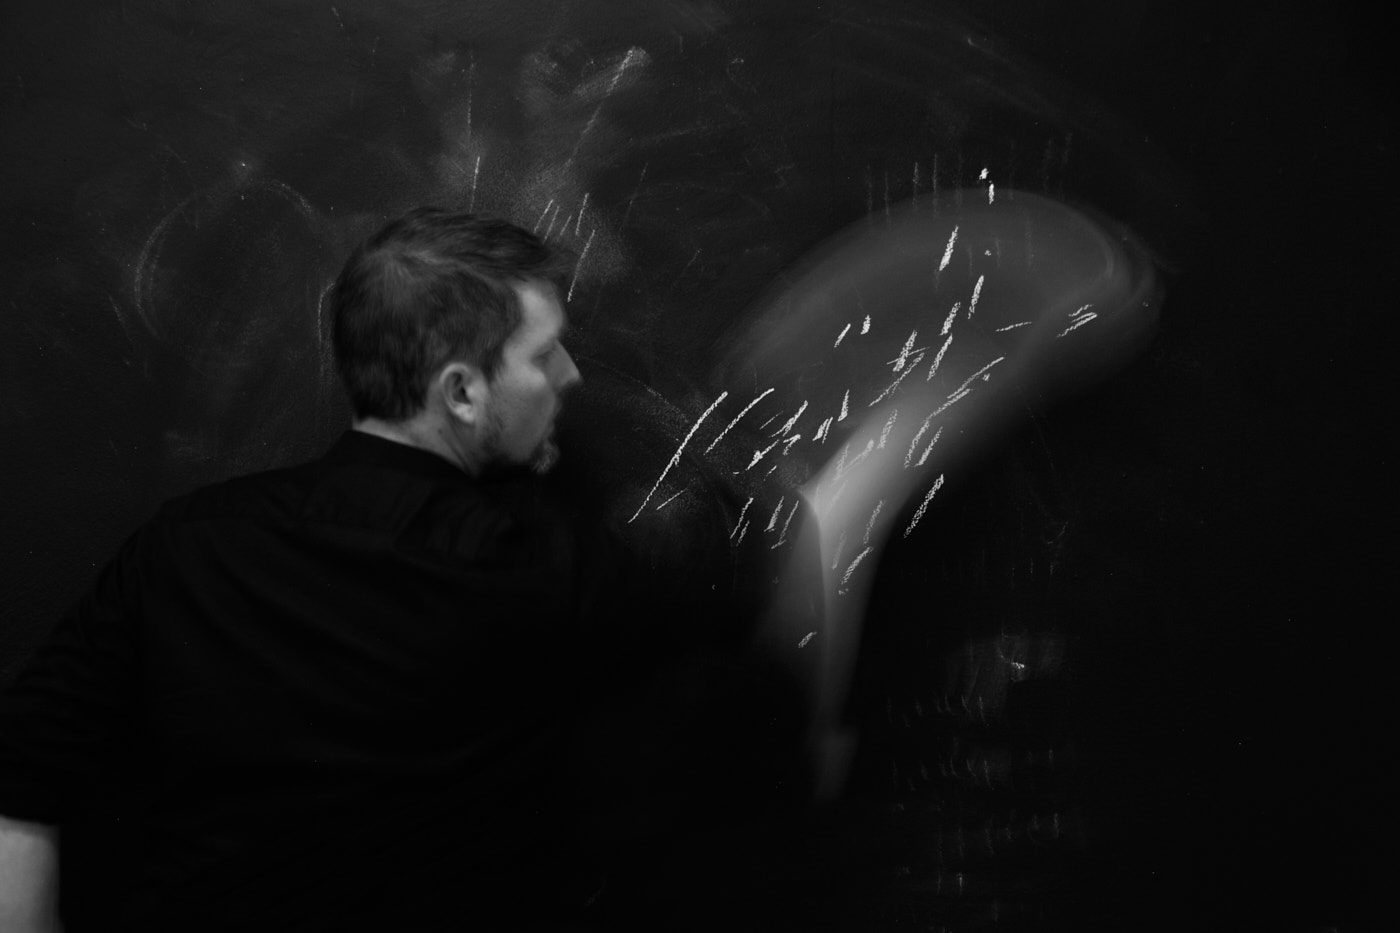 Ein Mann im schwarzen Hemd und kurzen dunklen Haaren mit dem Rücken zur Kamera. Er schreibt oder malt mit Kreide an einer Tafel. Sein Arm bewegt sich sehr schnell und ist unscharf.